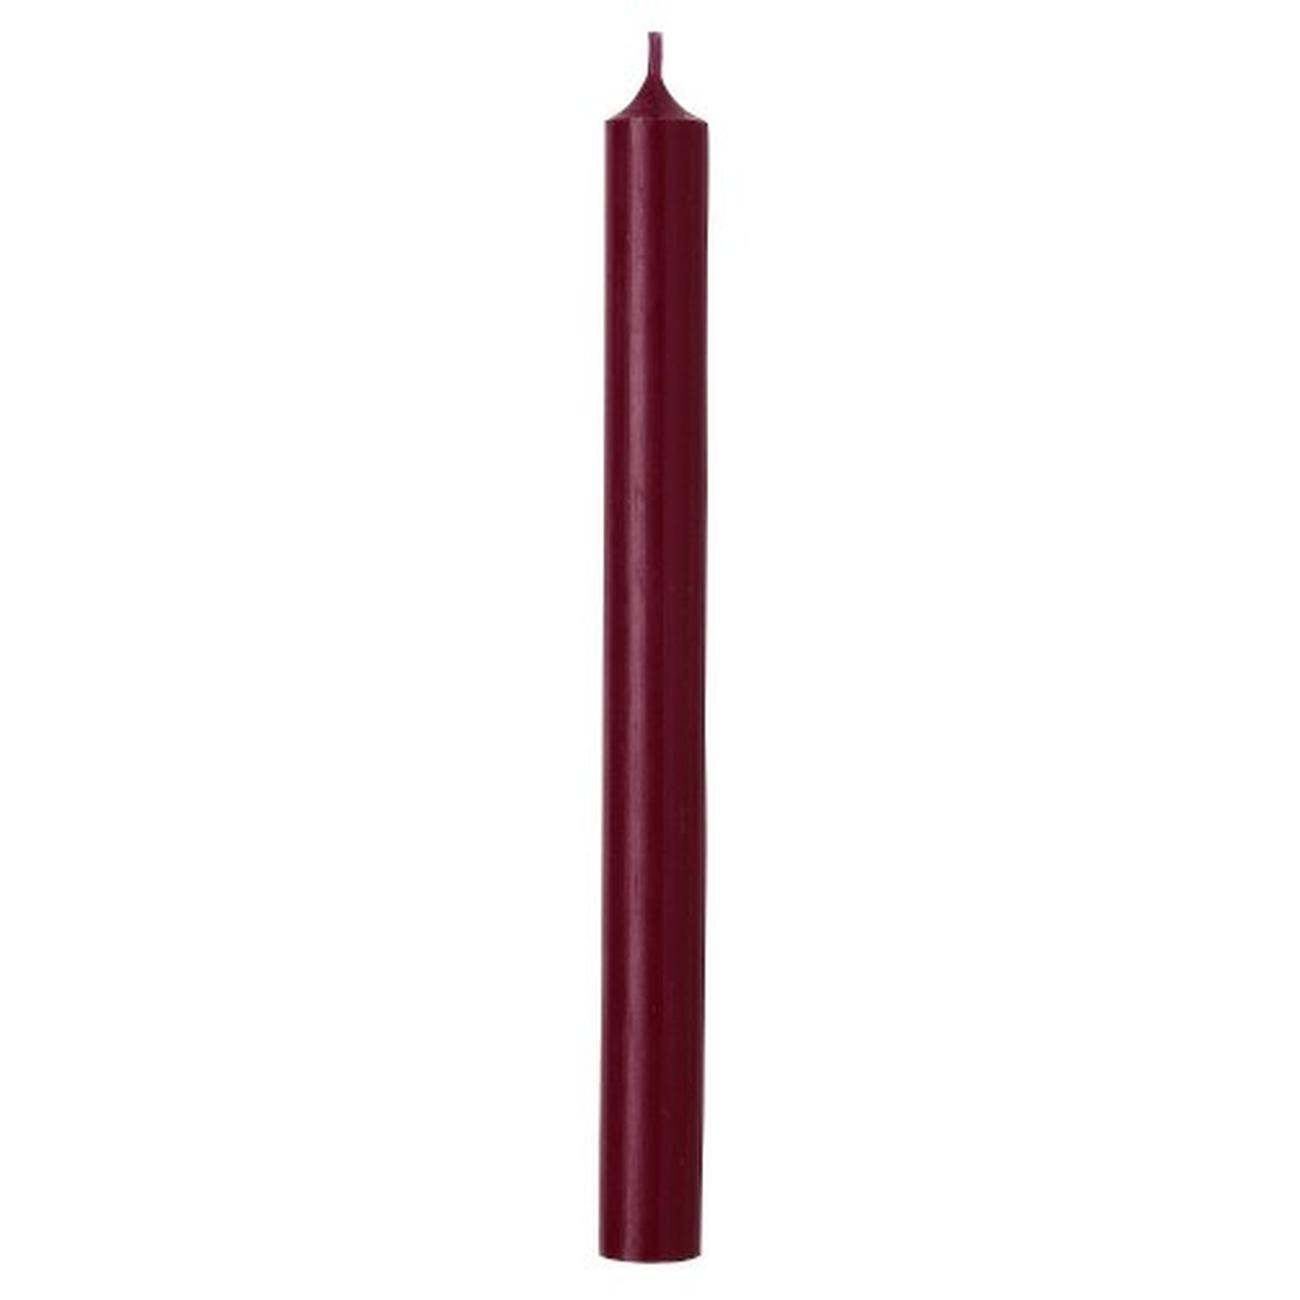 ihr-cylinder-candle-red-plum - IHR Cylinder Candle Red Plum